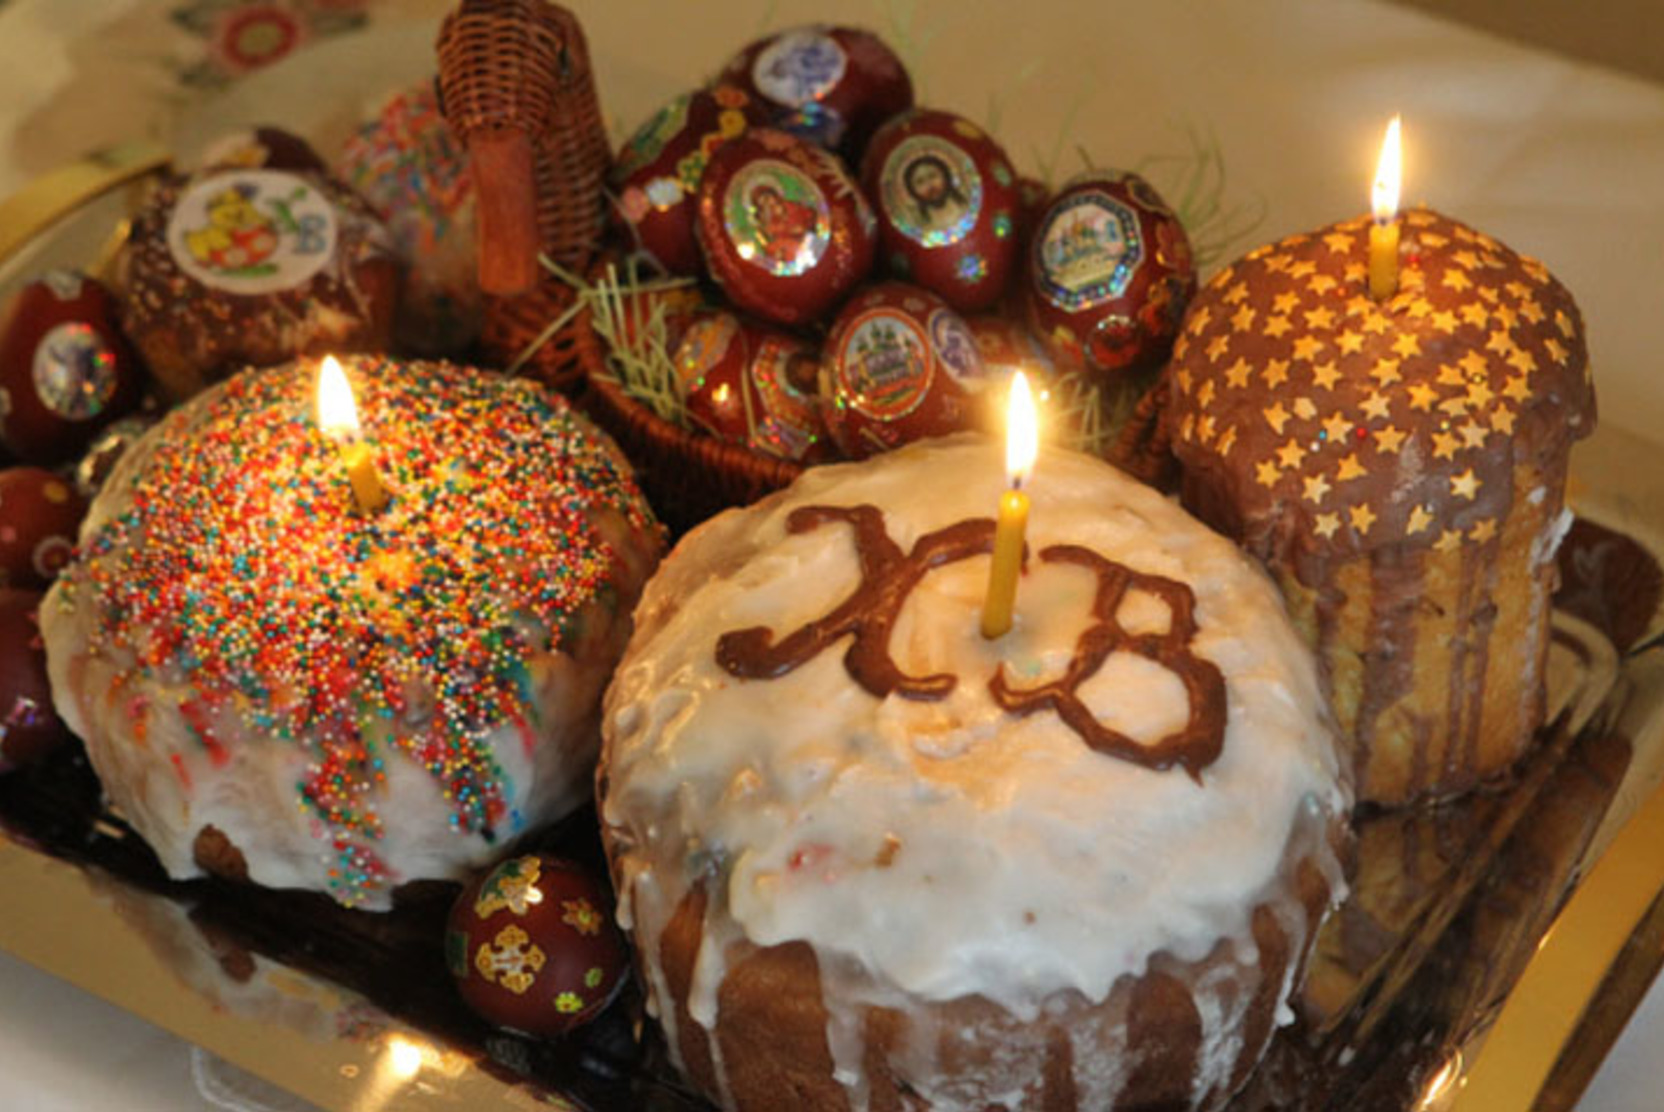 ВЦИОМ: Пасха входит в тройку наиболее важных праздников для россиян